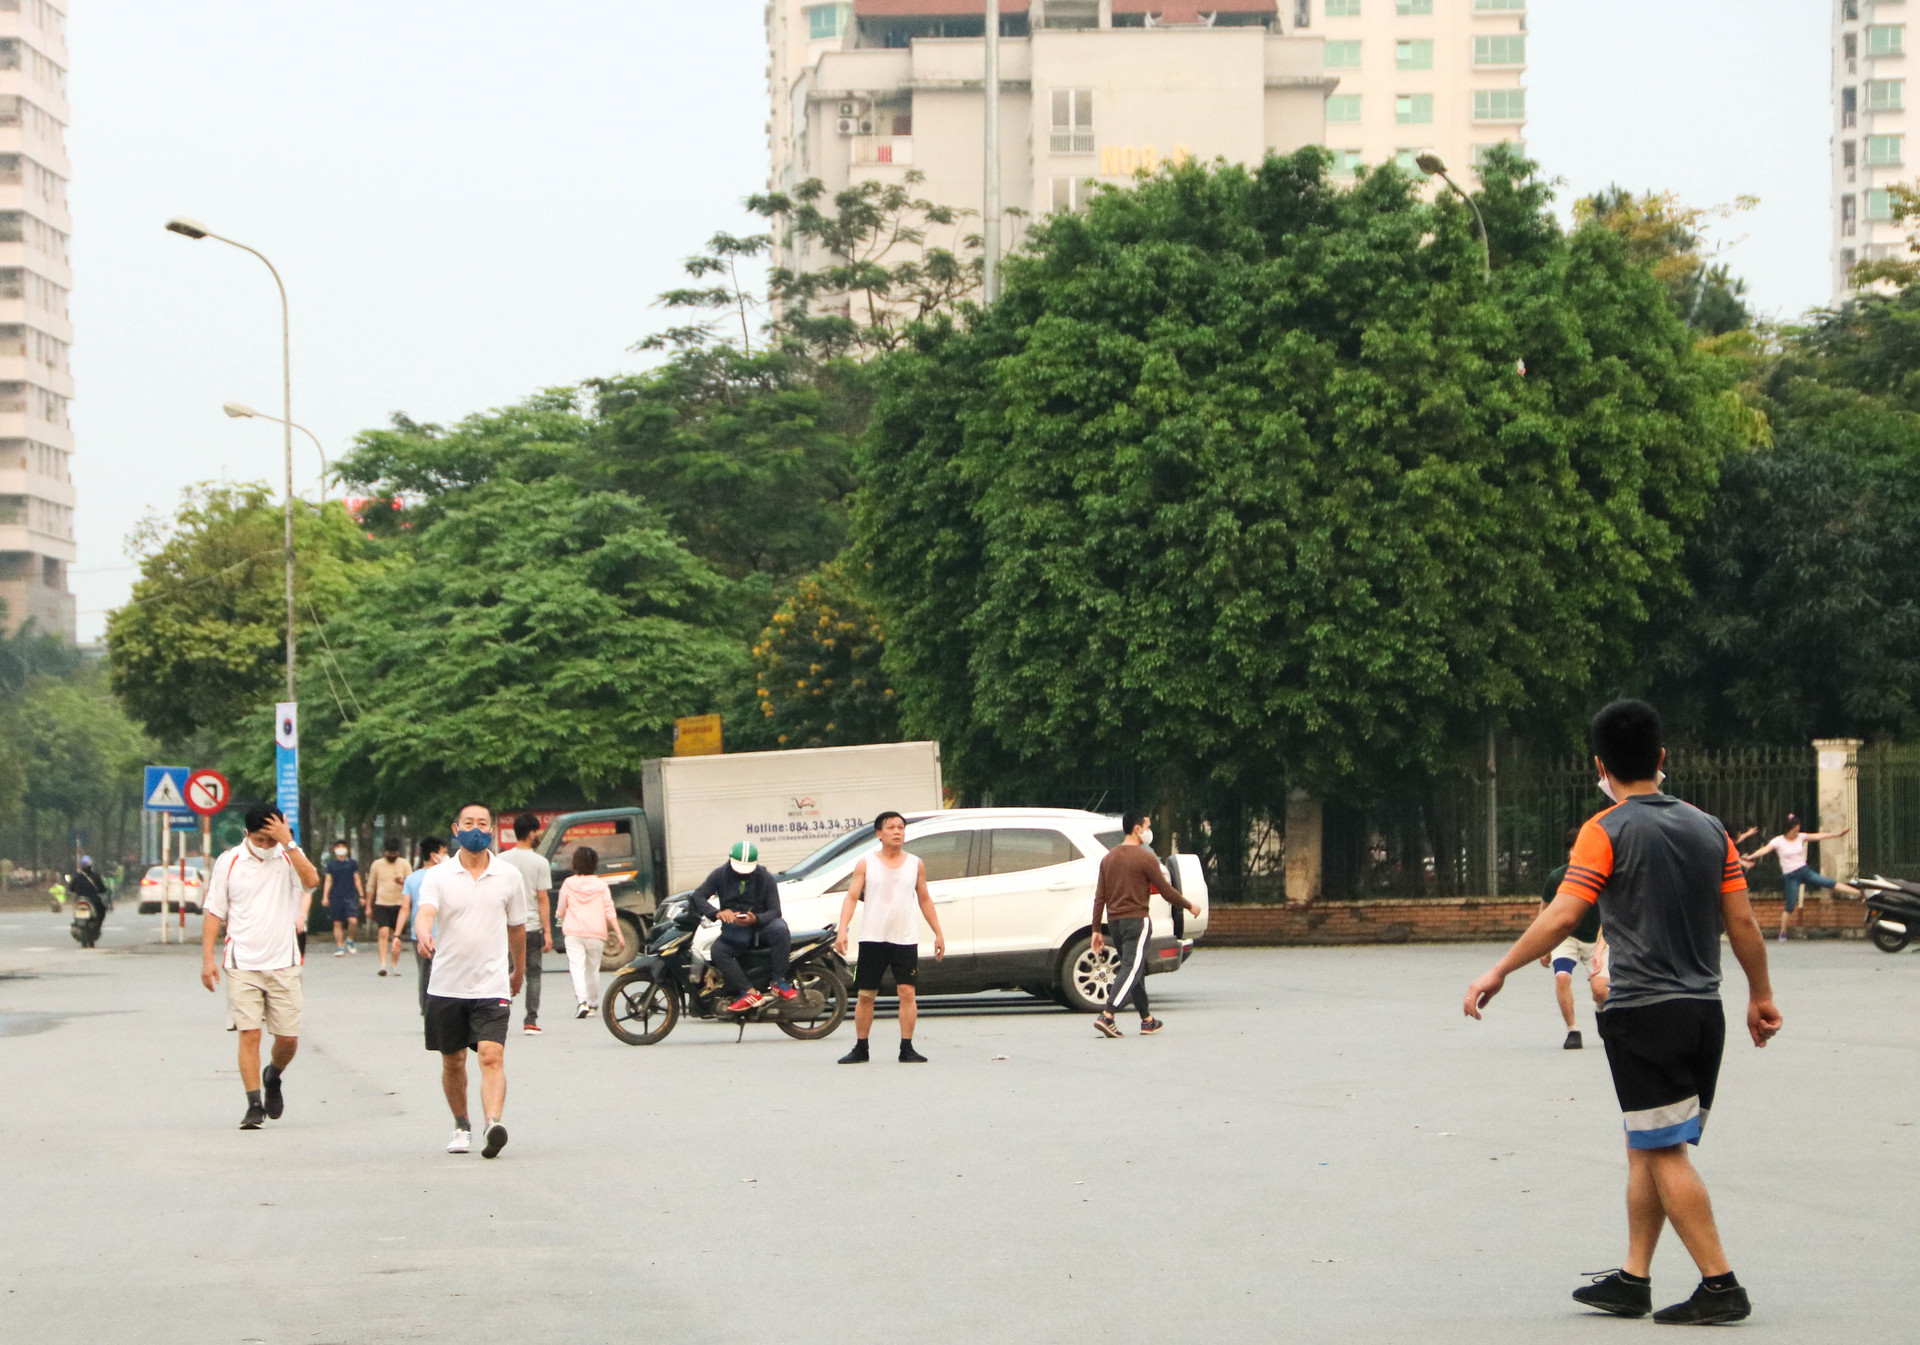 Chùm ảnh: Các tụ điểm công cộng tại Hà Nội dần trở nên đông đúc sau một tuần thực hiện cách ly xã hội - Ảnh 7.